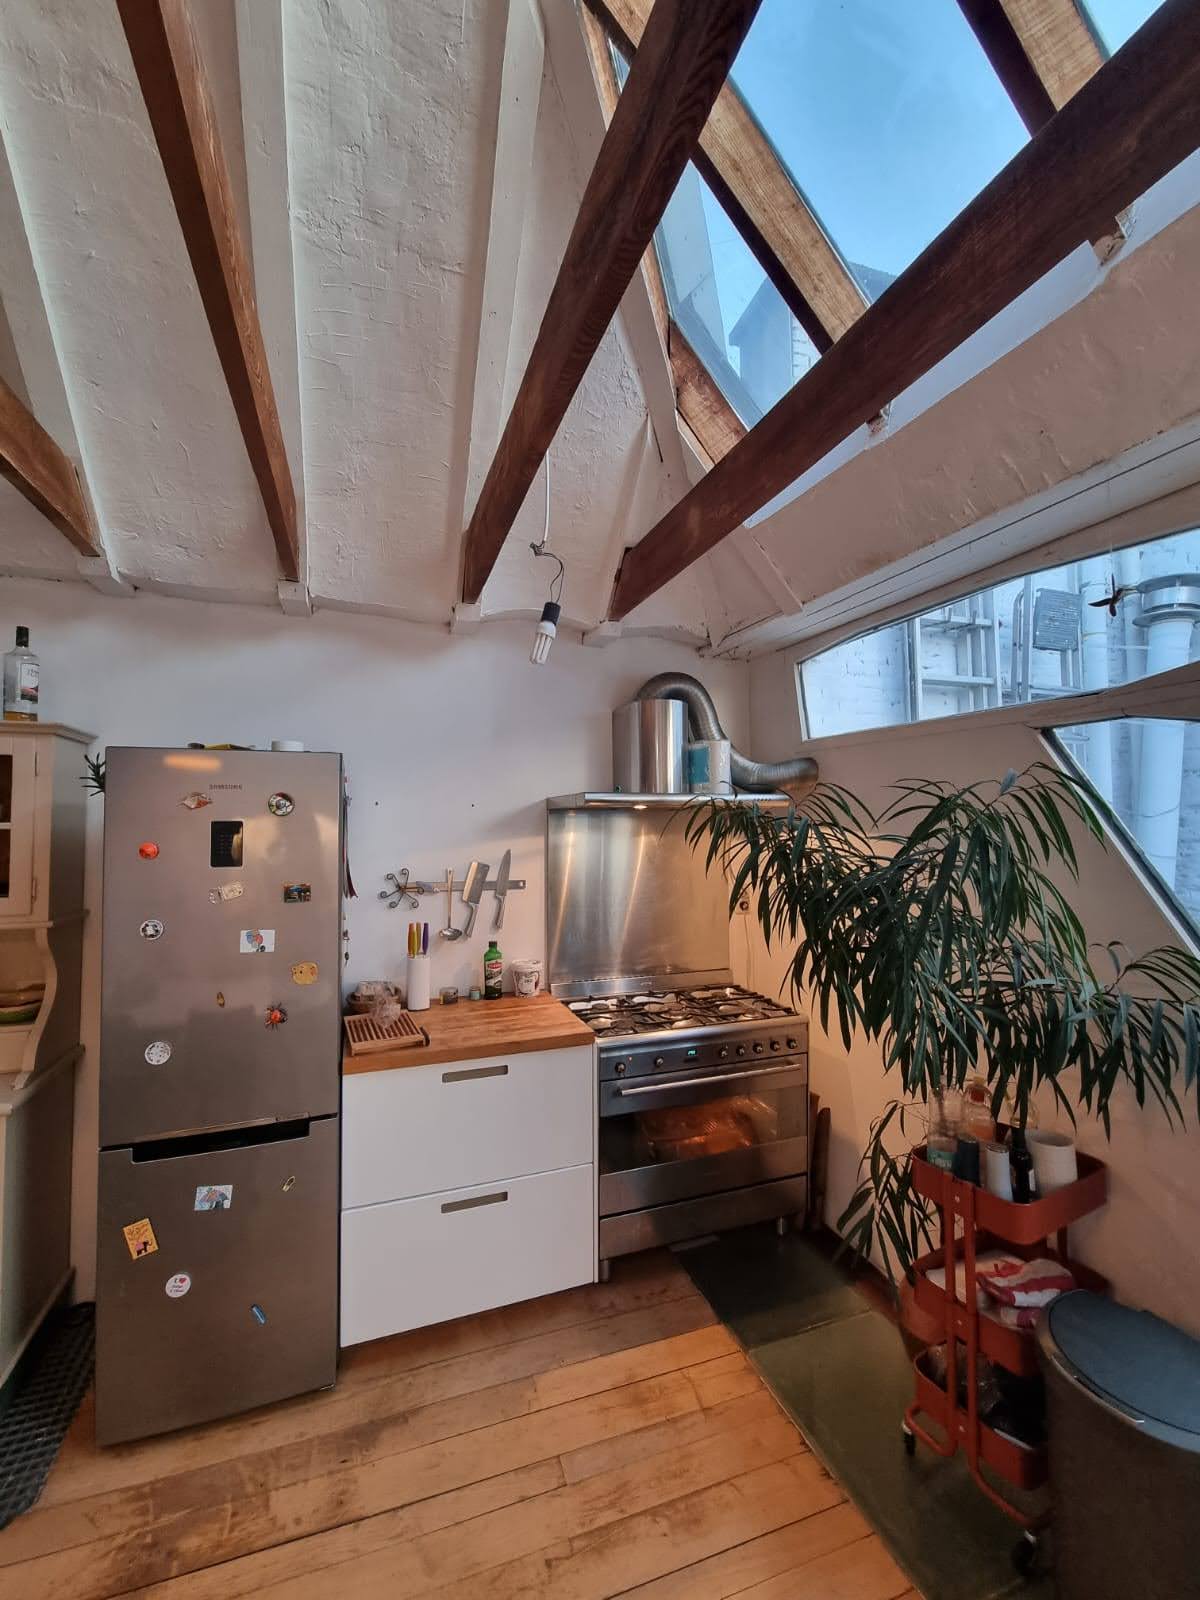 Driekoningen - Apartment for rent in Berchem, Antwerp kitchen 2